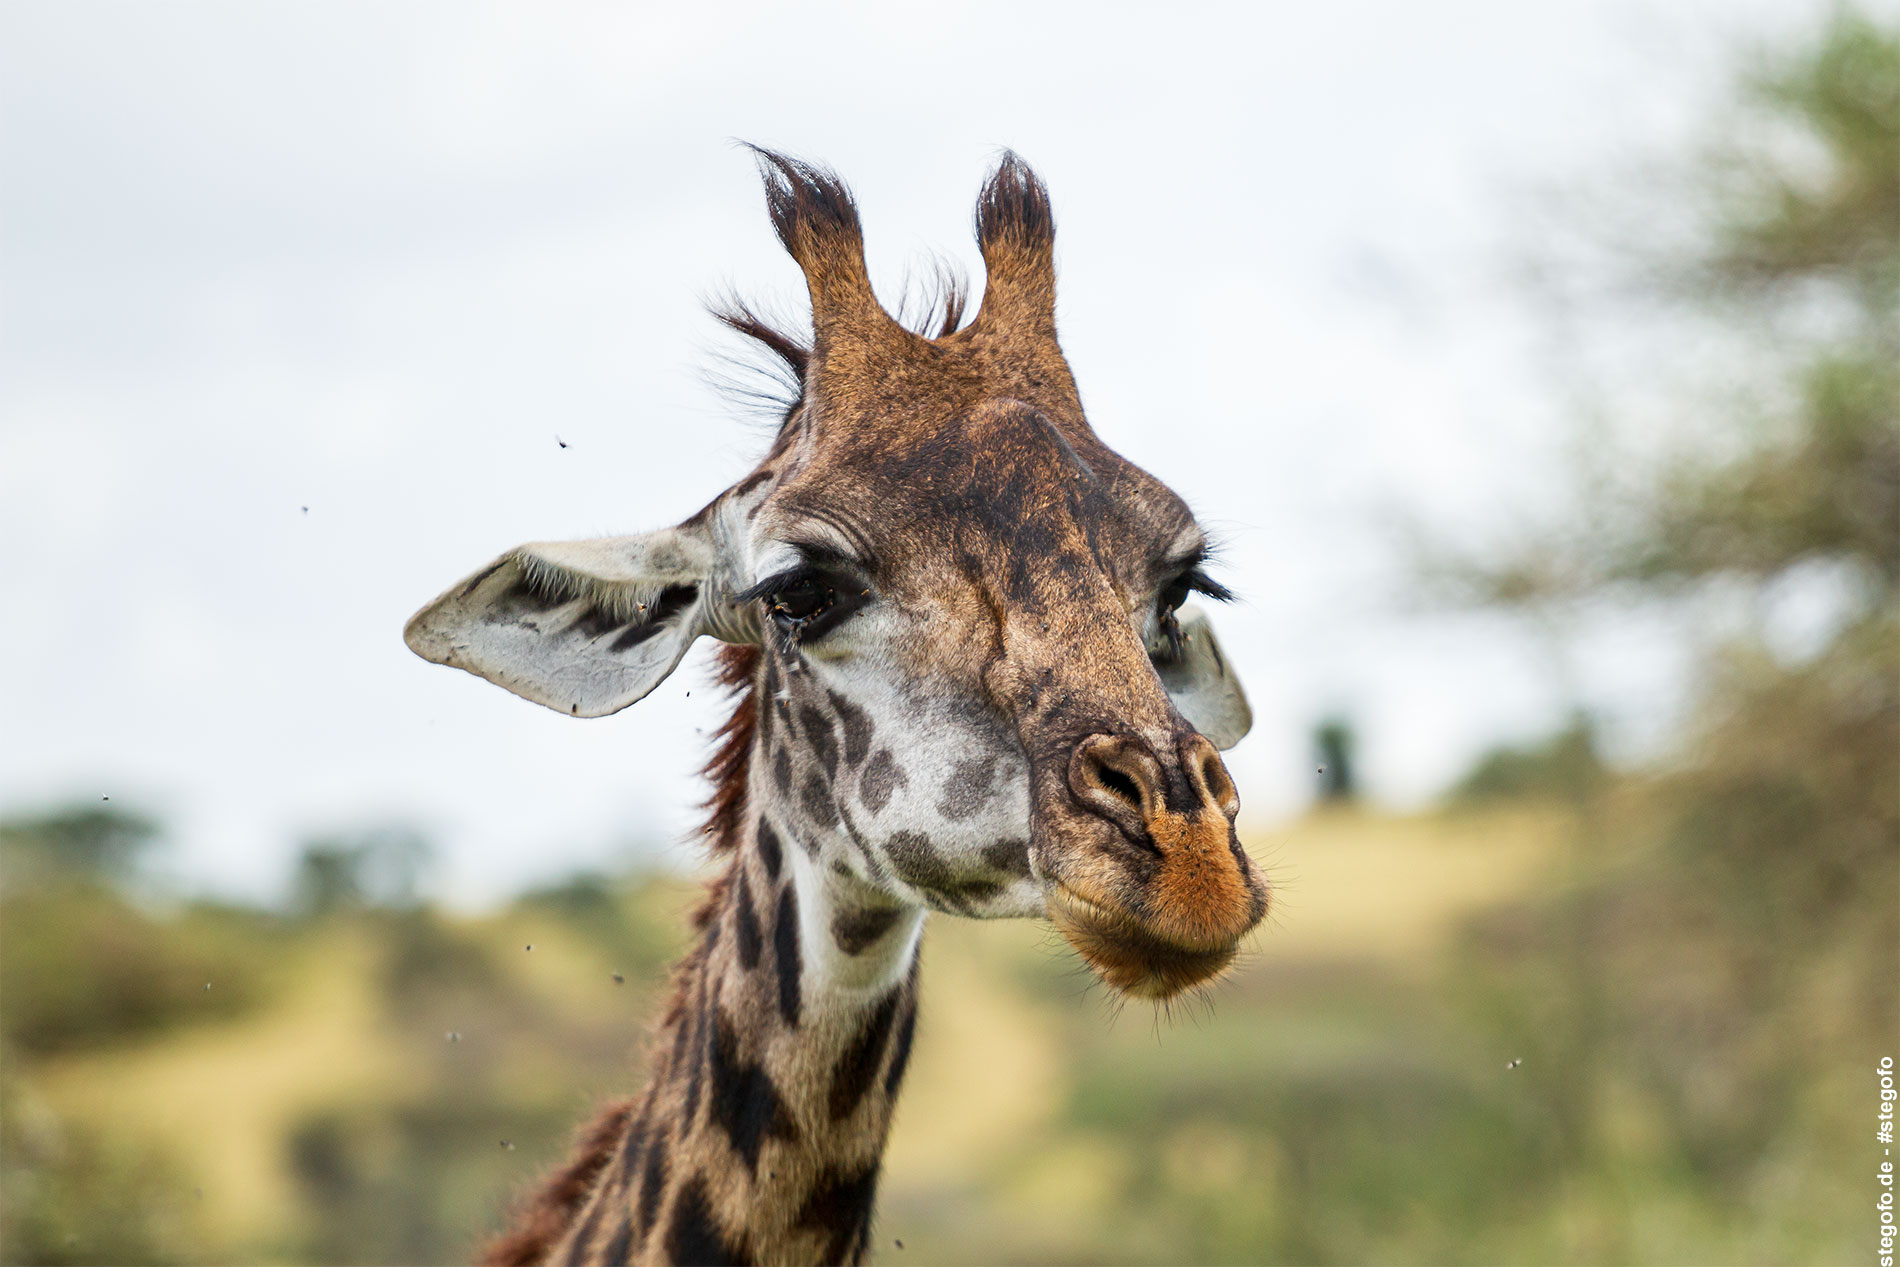 Die entspannte Giraffe - Serengeti Nationalpark - 02.2019